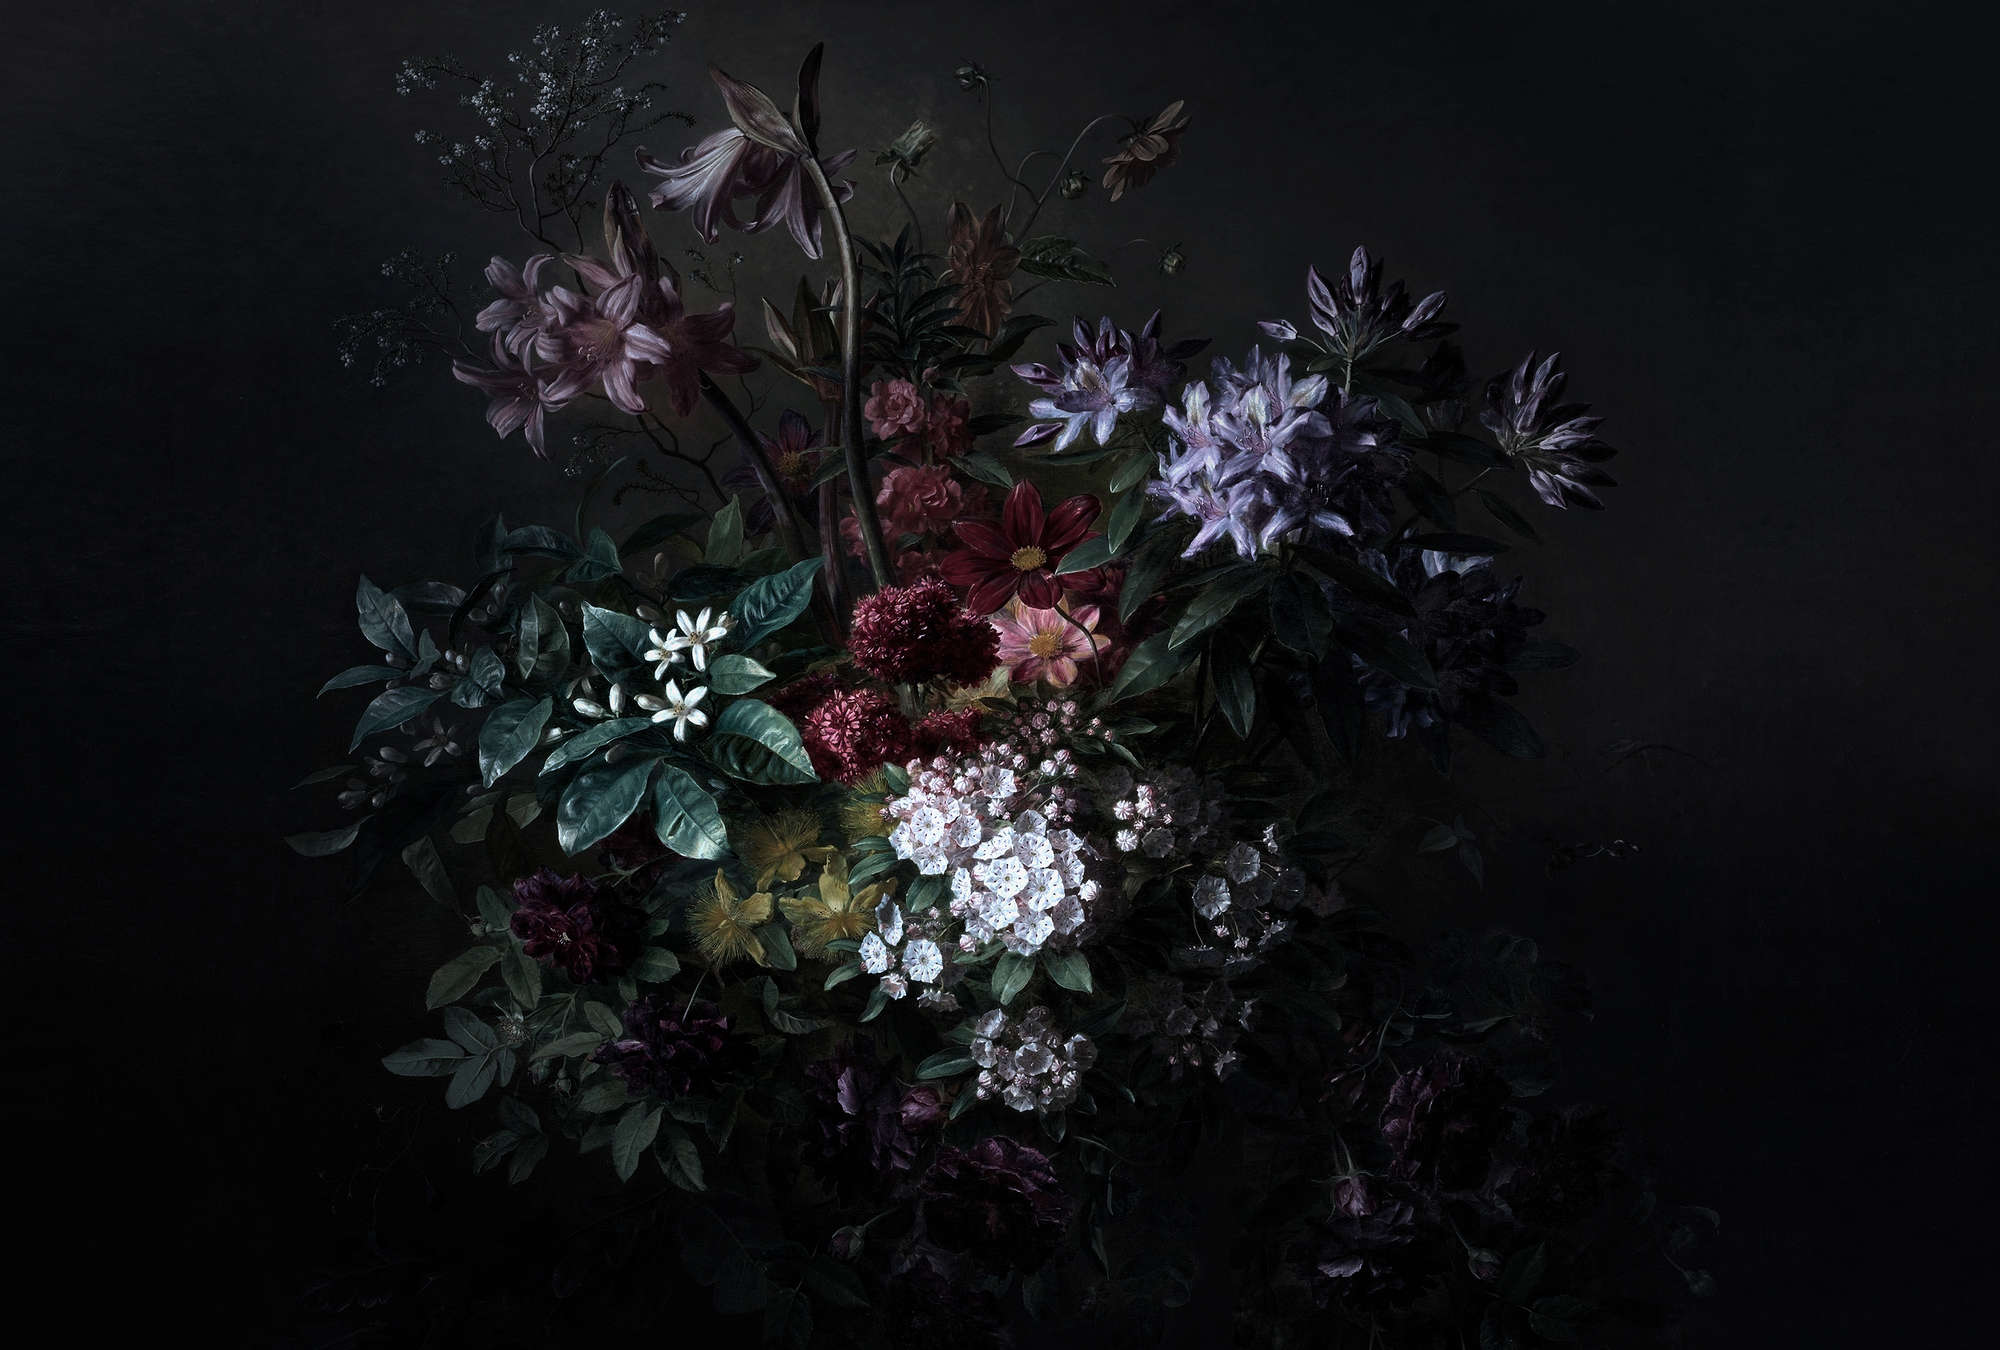             Blumen Fototapete Rosen Stillleben – Walls by Patel
        